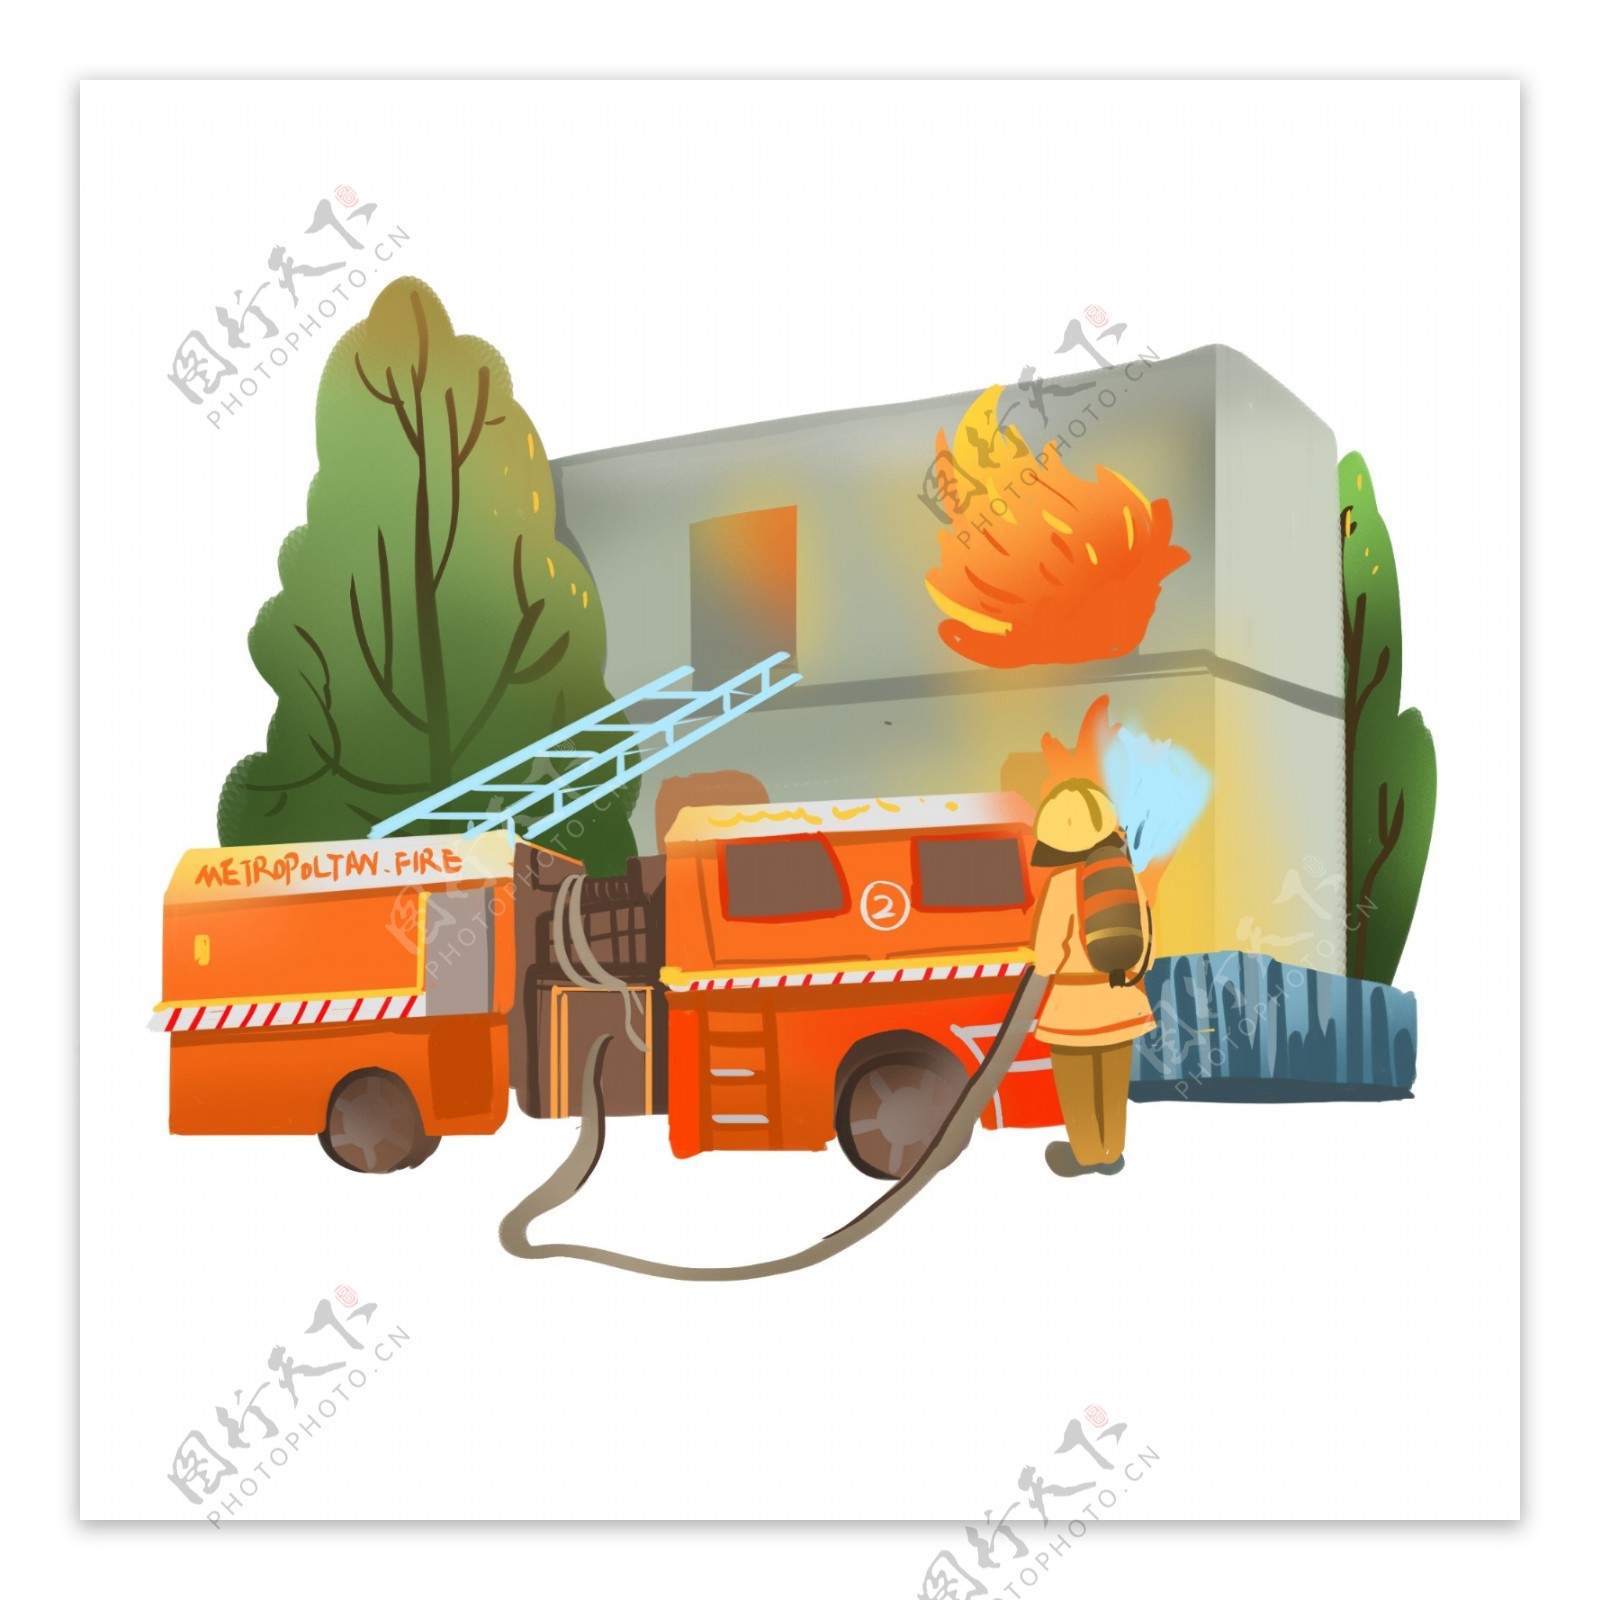 消防人员救火场景商用插画可商用元素